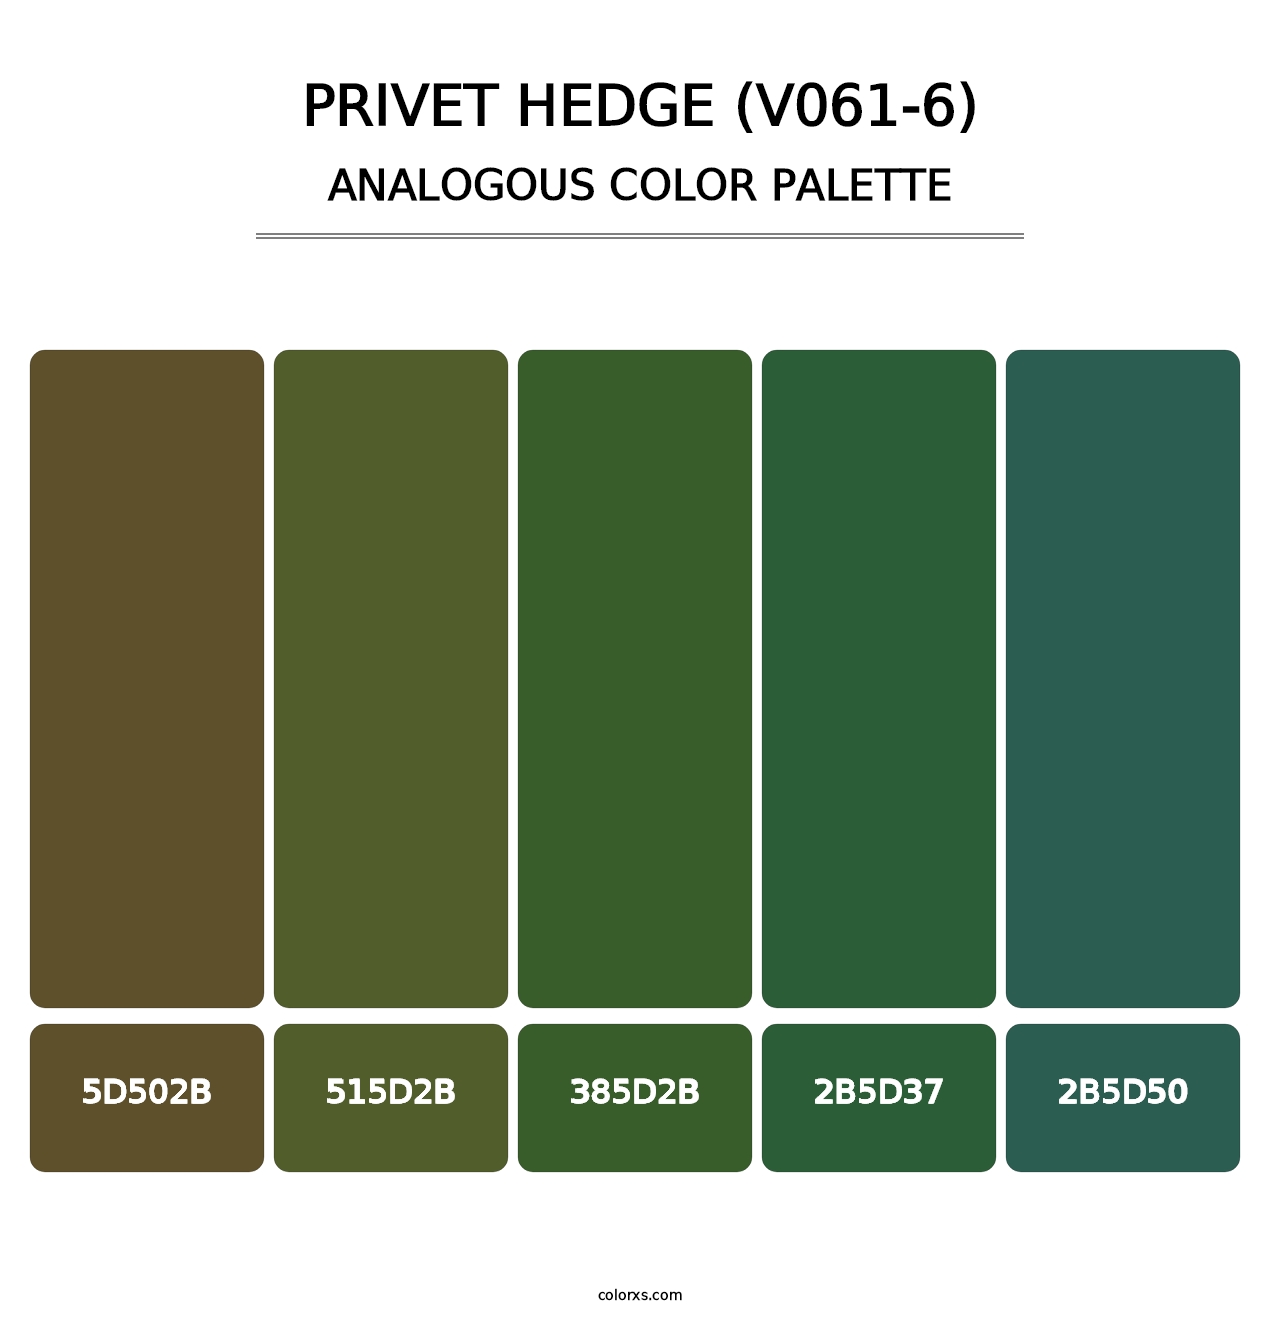 Privet Hedge (V061-6) - Analogous Color Palette